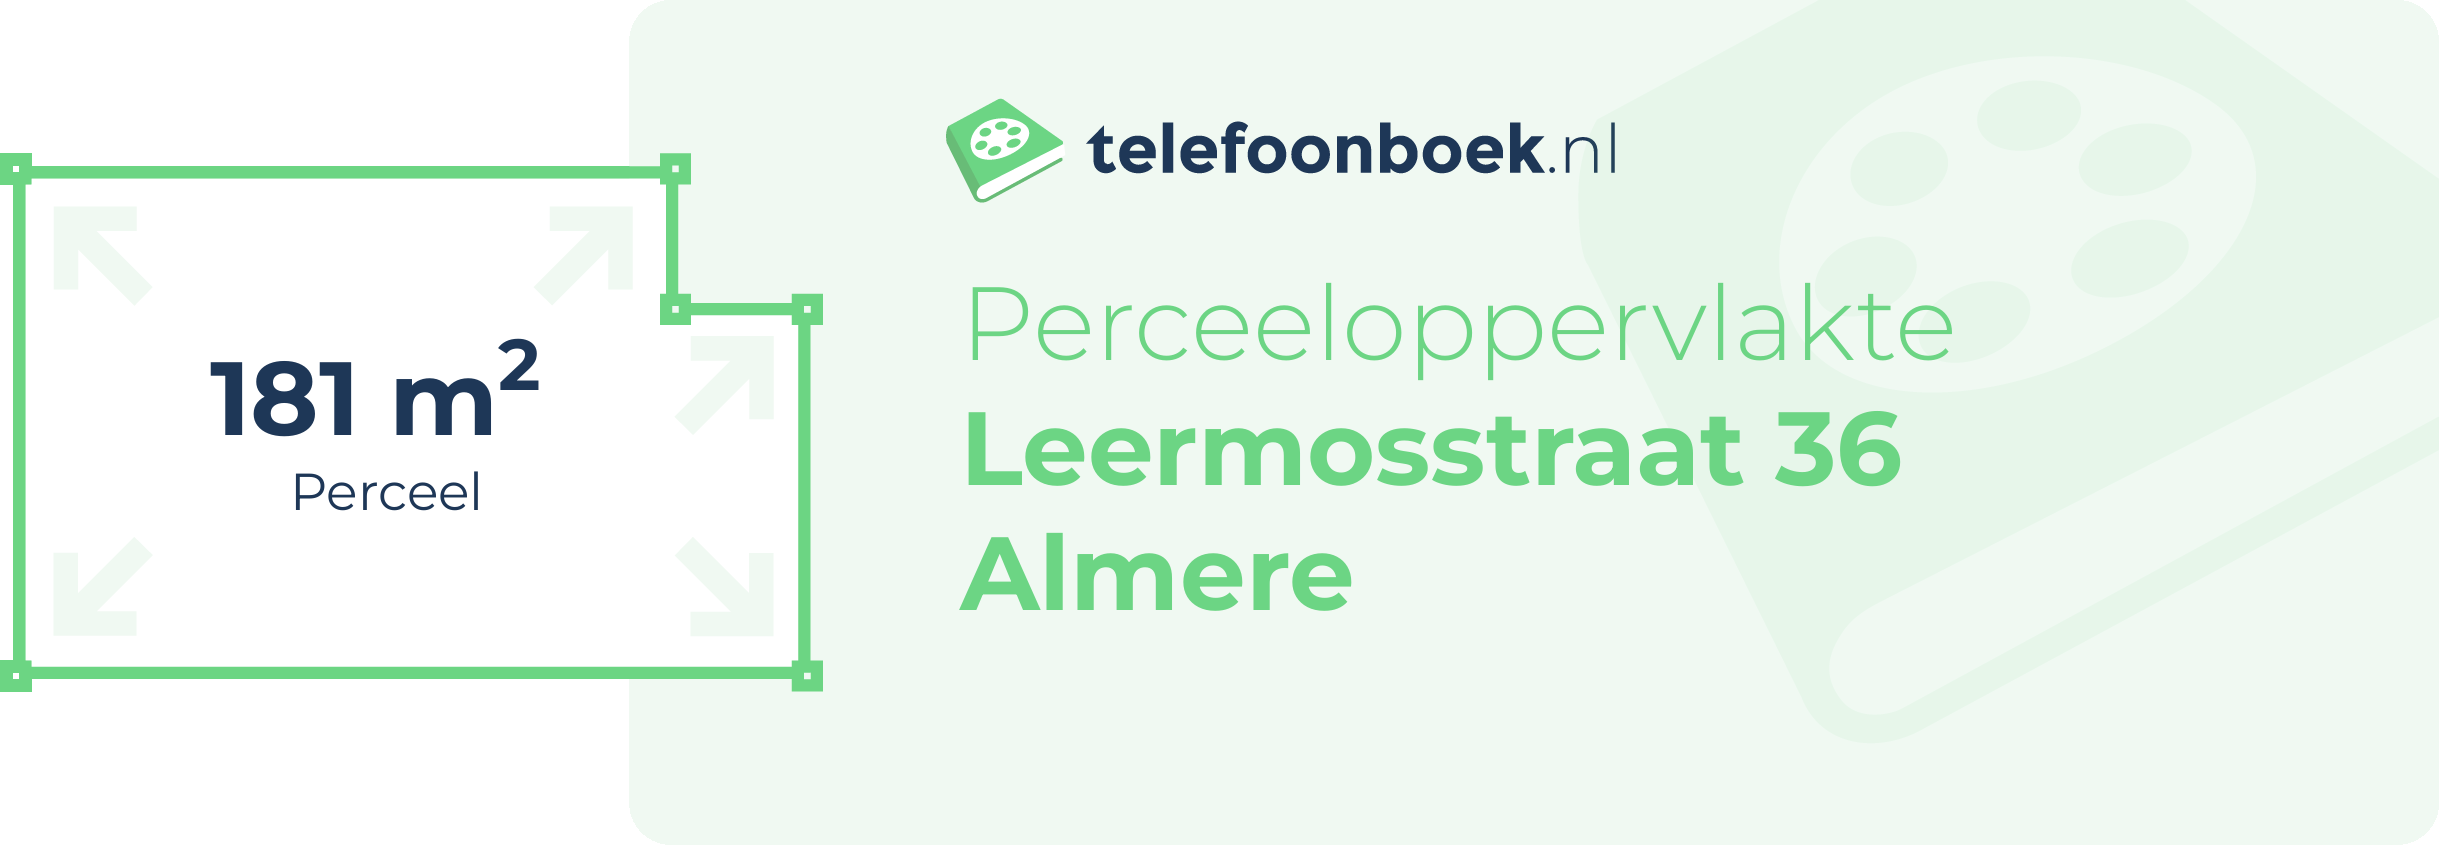 Perceeloppervlakte Leermosstraat 36 Almere